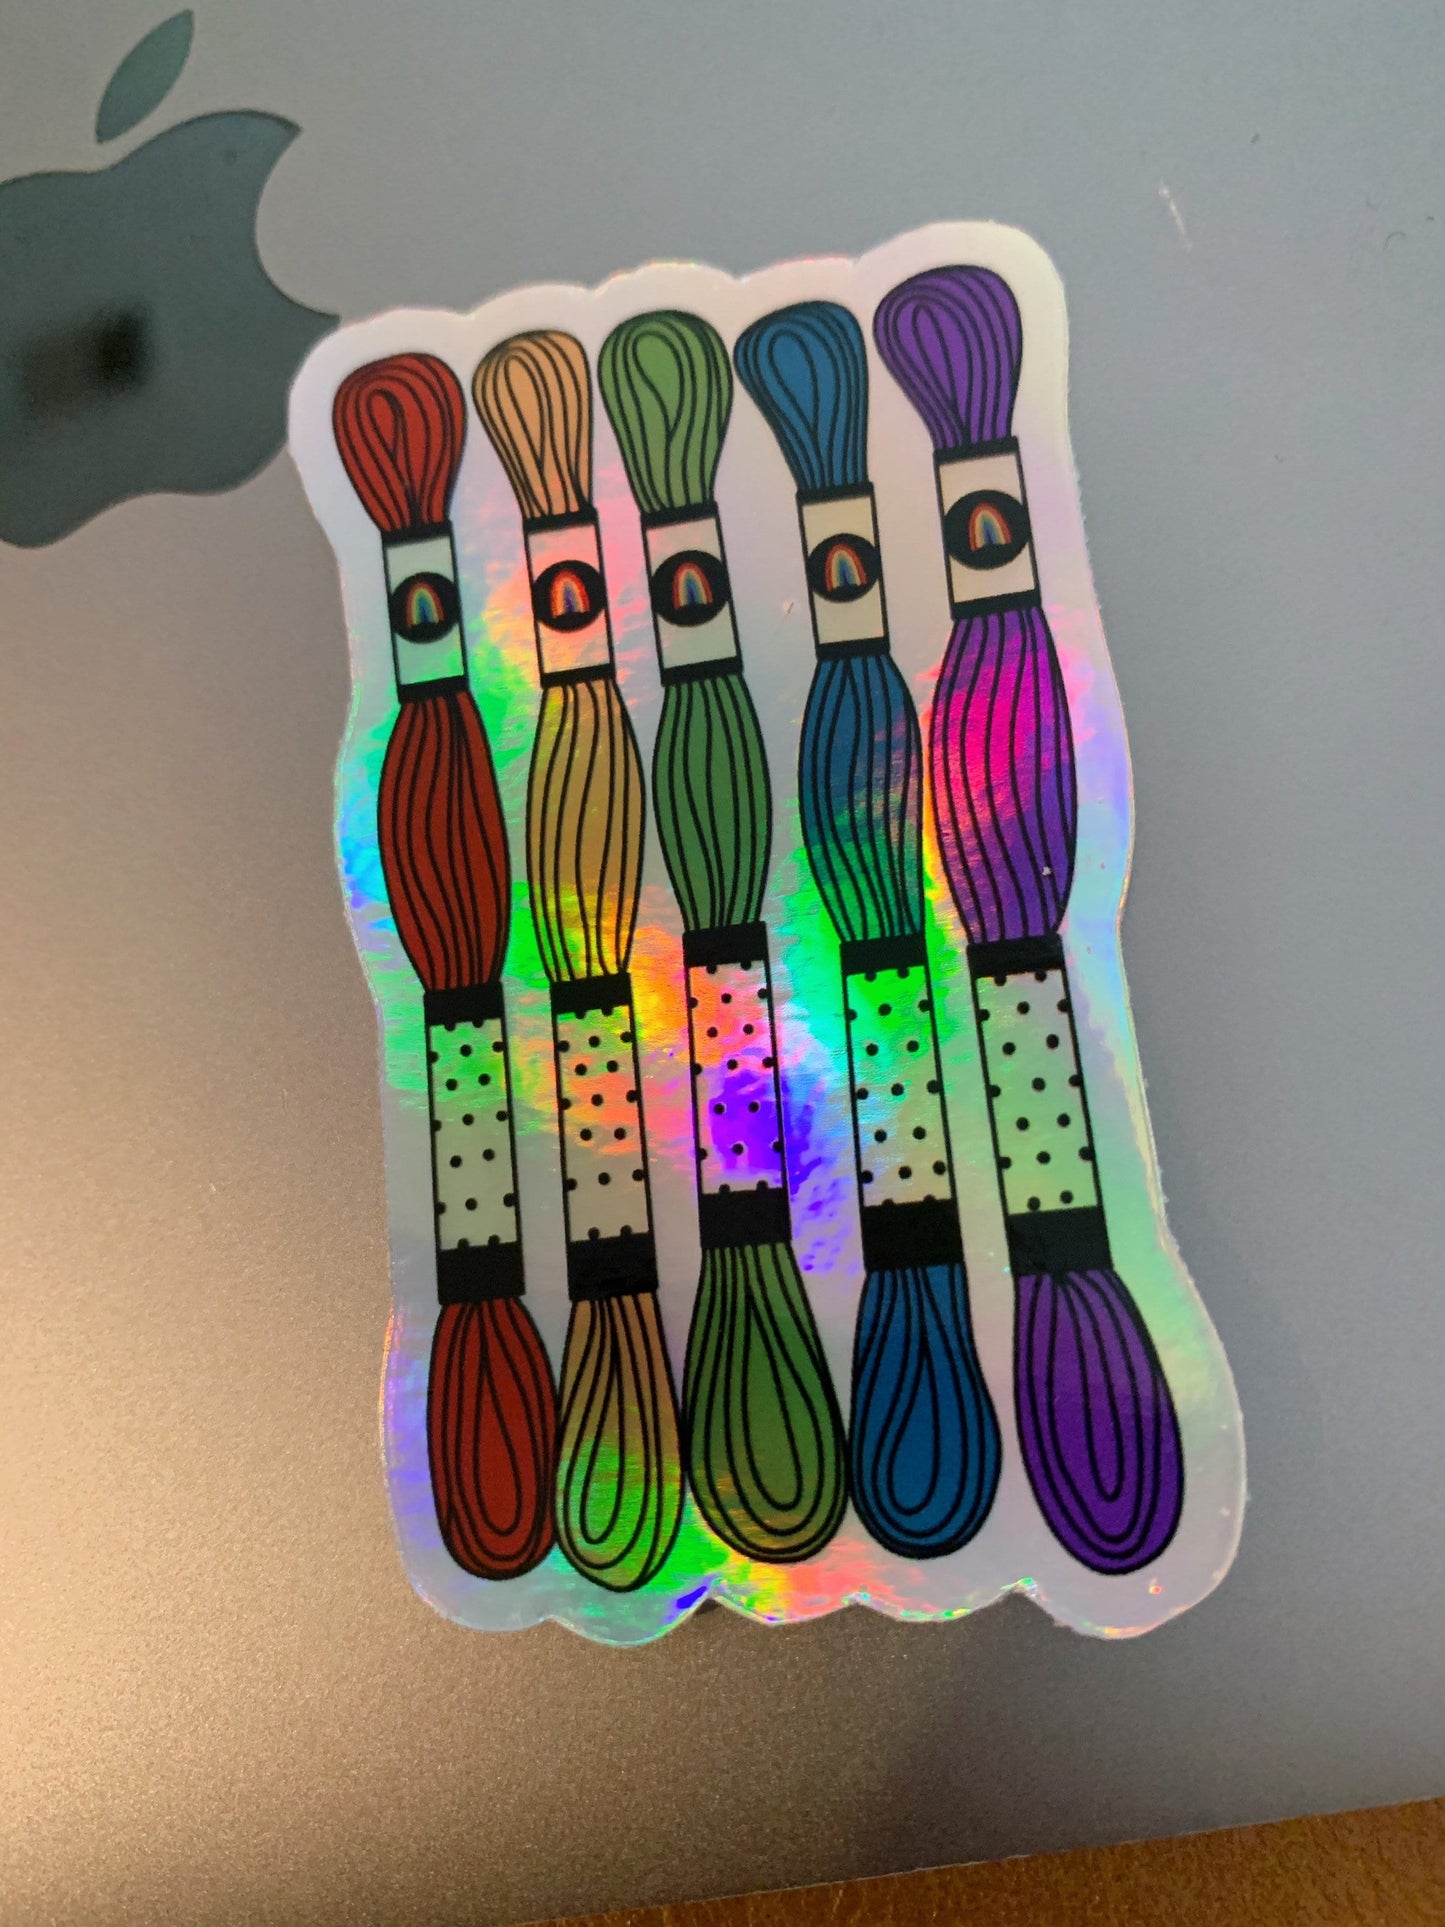 Holographic Rainbow Embroidery Floss Skein Sticker - Waterproof, Vinyl Sticker